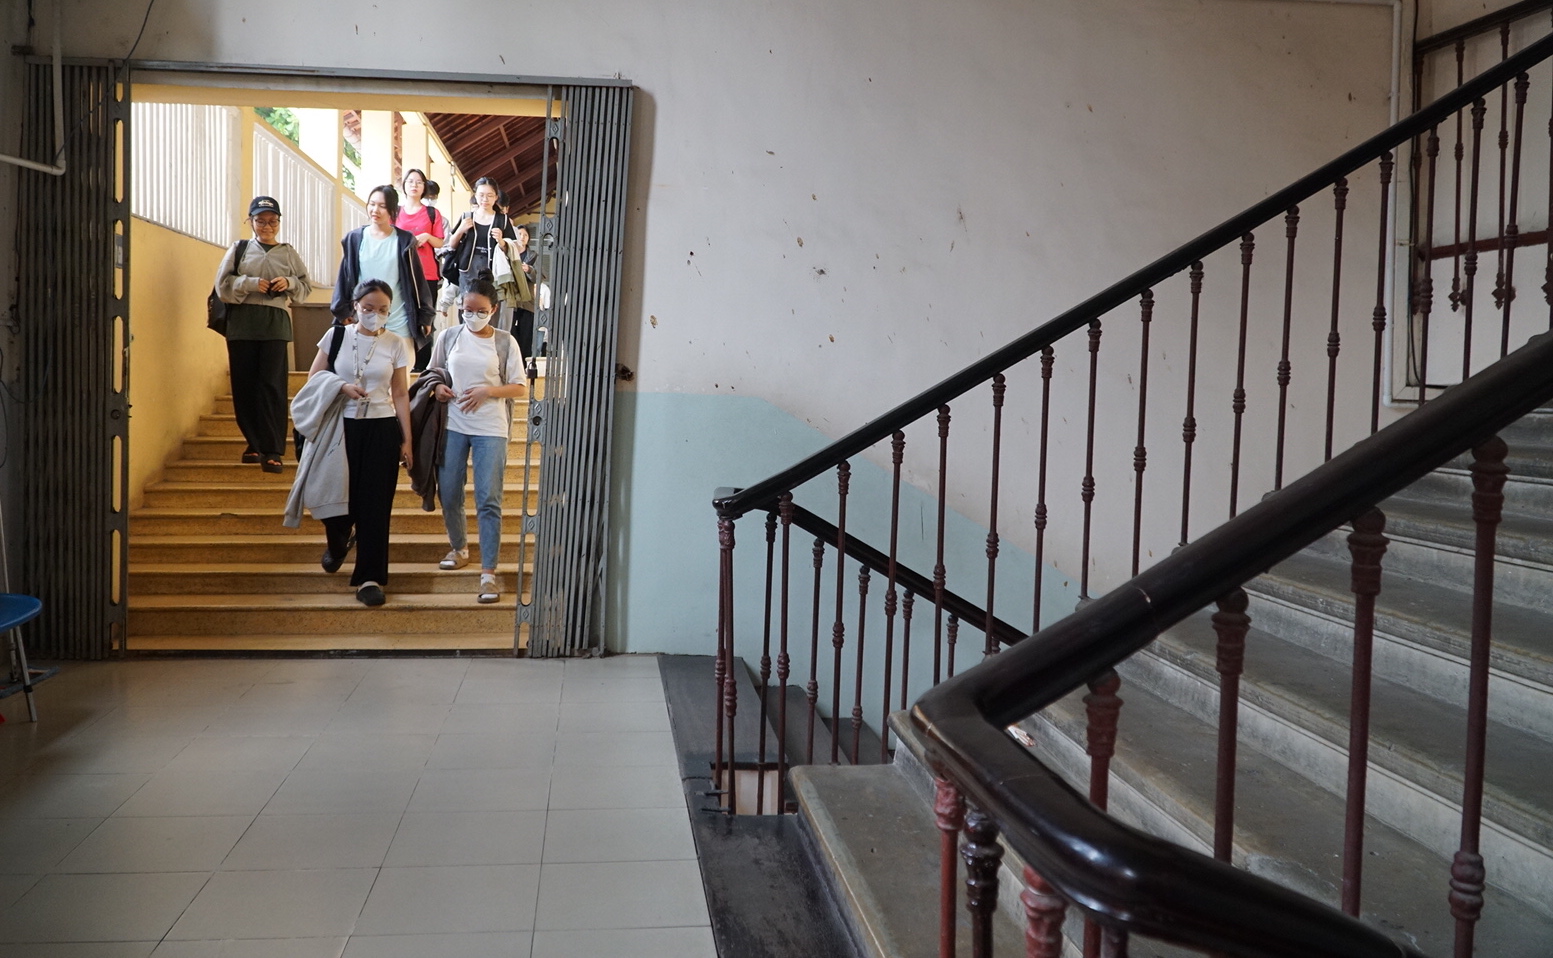 Điểm nối giữa cầu thang gỗ là hành lang, nơi dẫn vào các phòng học của sinh viên